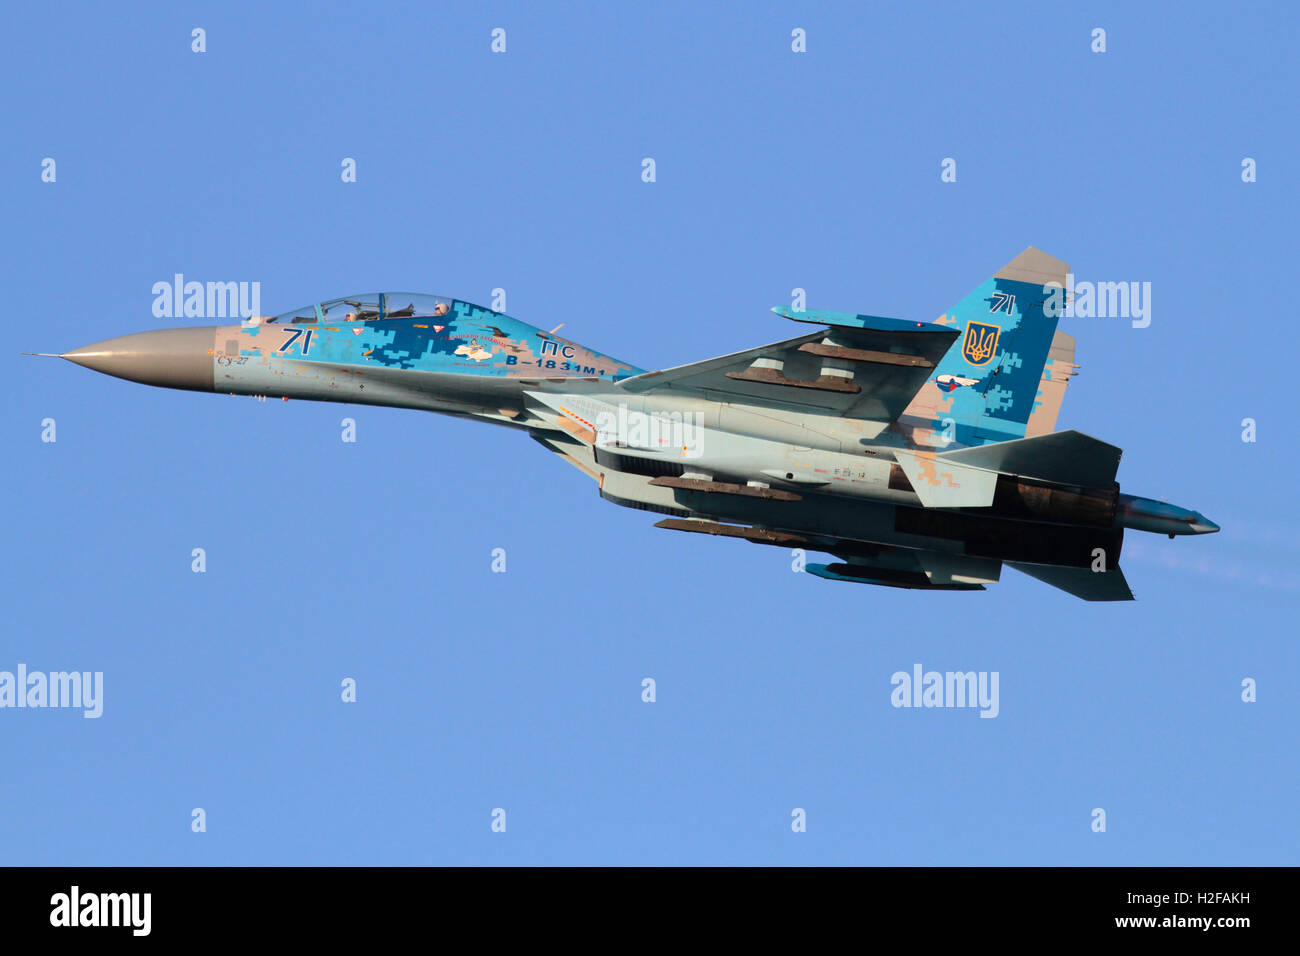 Militärische Luftfahrt. Suchoi Su-27 UB Flanker Kampfjet Flugzeug der Ukraine Air Force fliegt in den Himmel Stockfoto